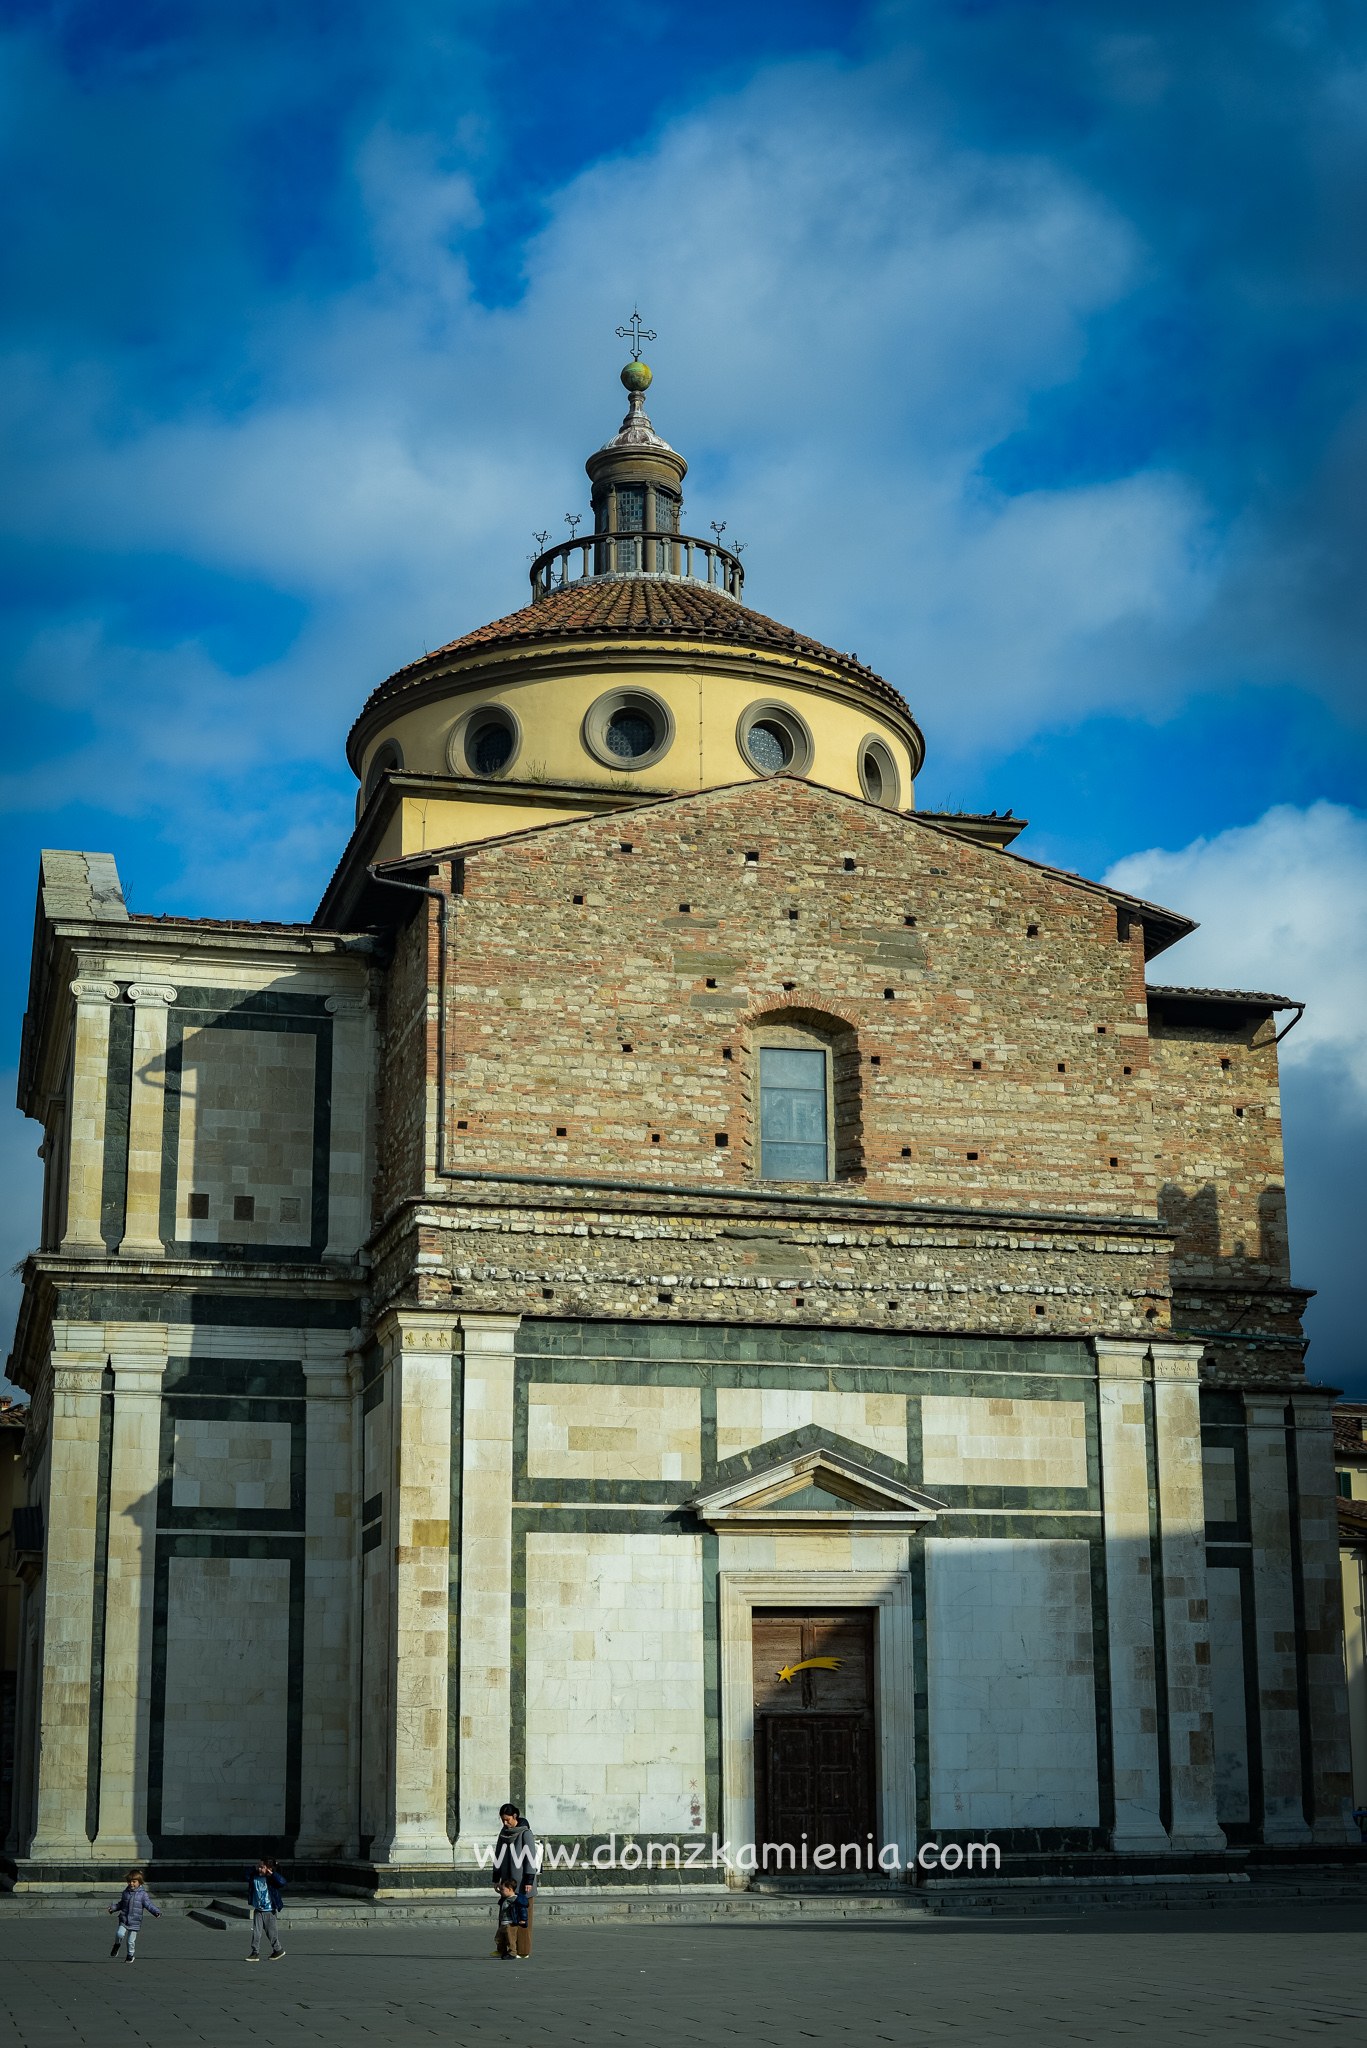 Dom z Kamienia blog - Co zobaczyć w Prato